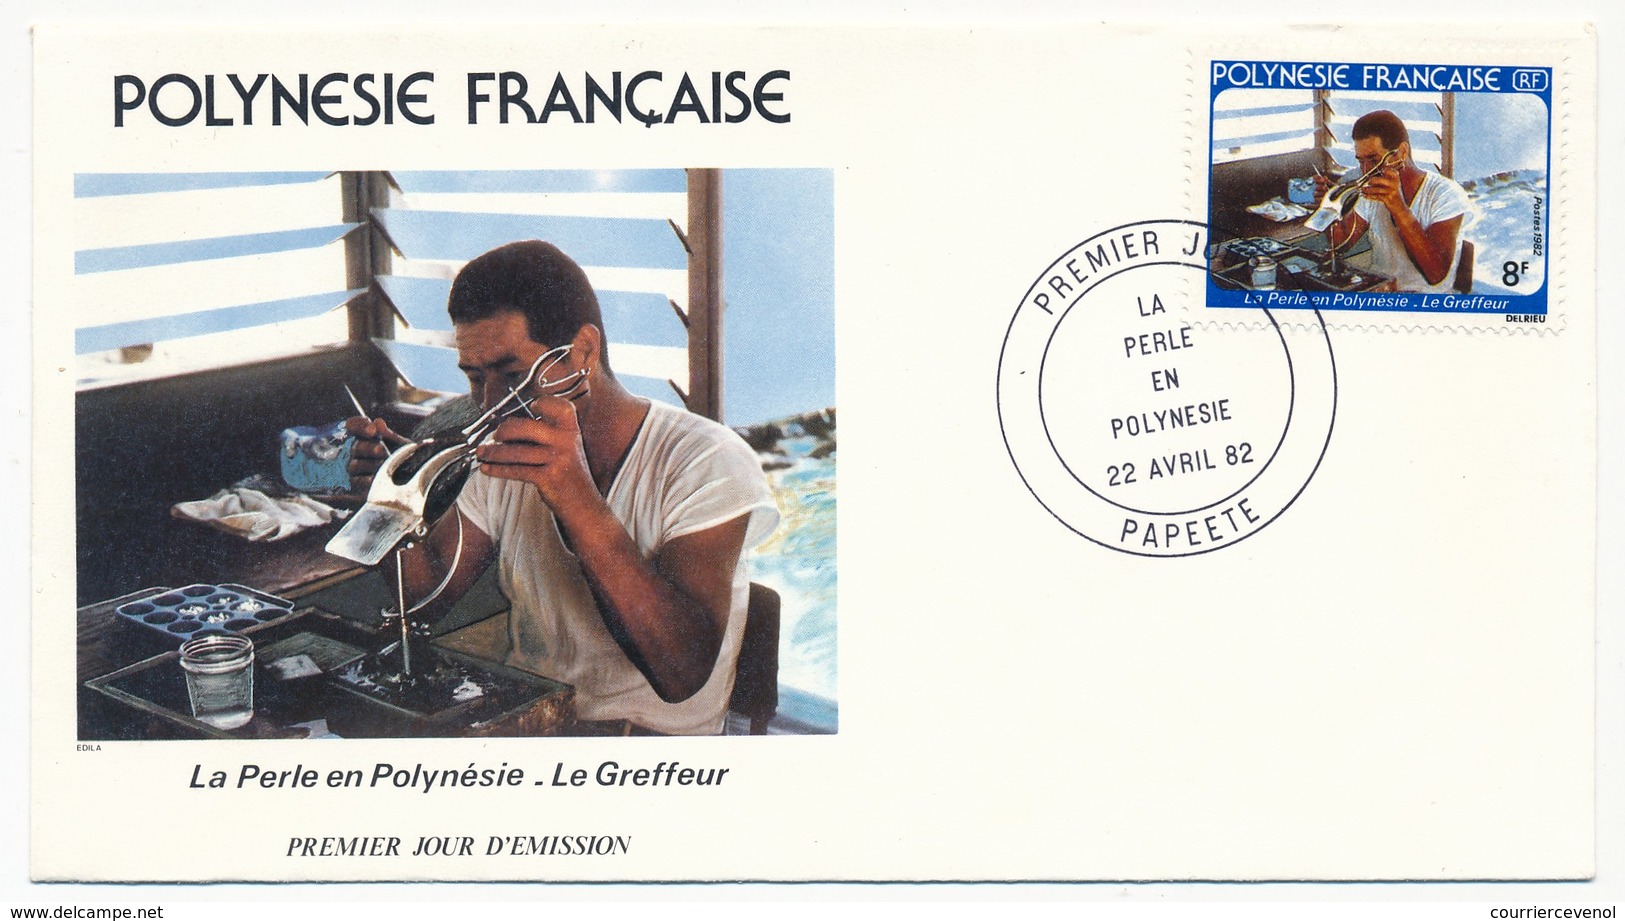 POLYNESIE FRANCAISE - 3 FDC - La Perle En Polynésie - Papeete - 22 Avril 1982 - FDC